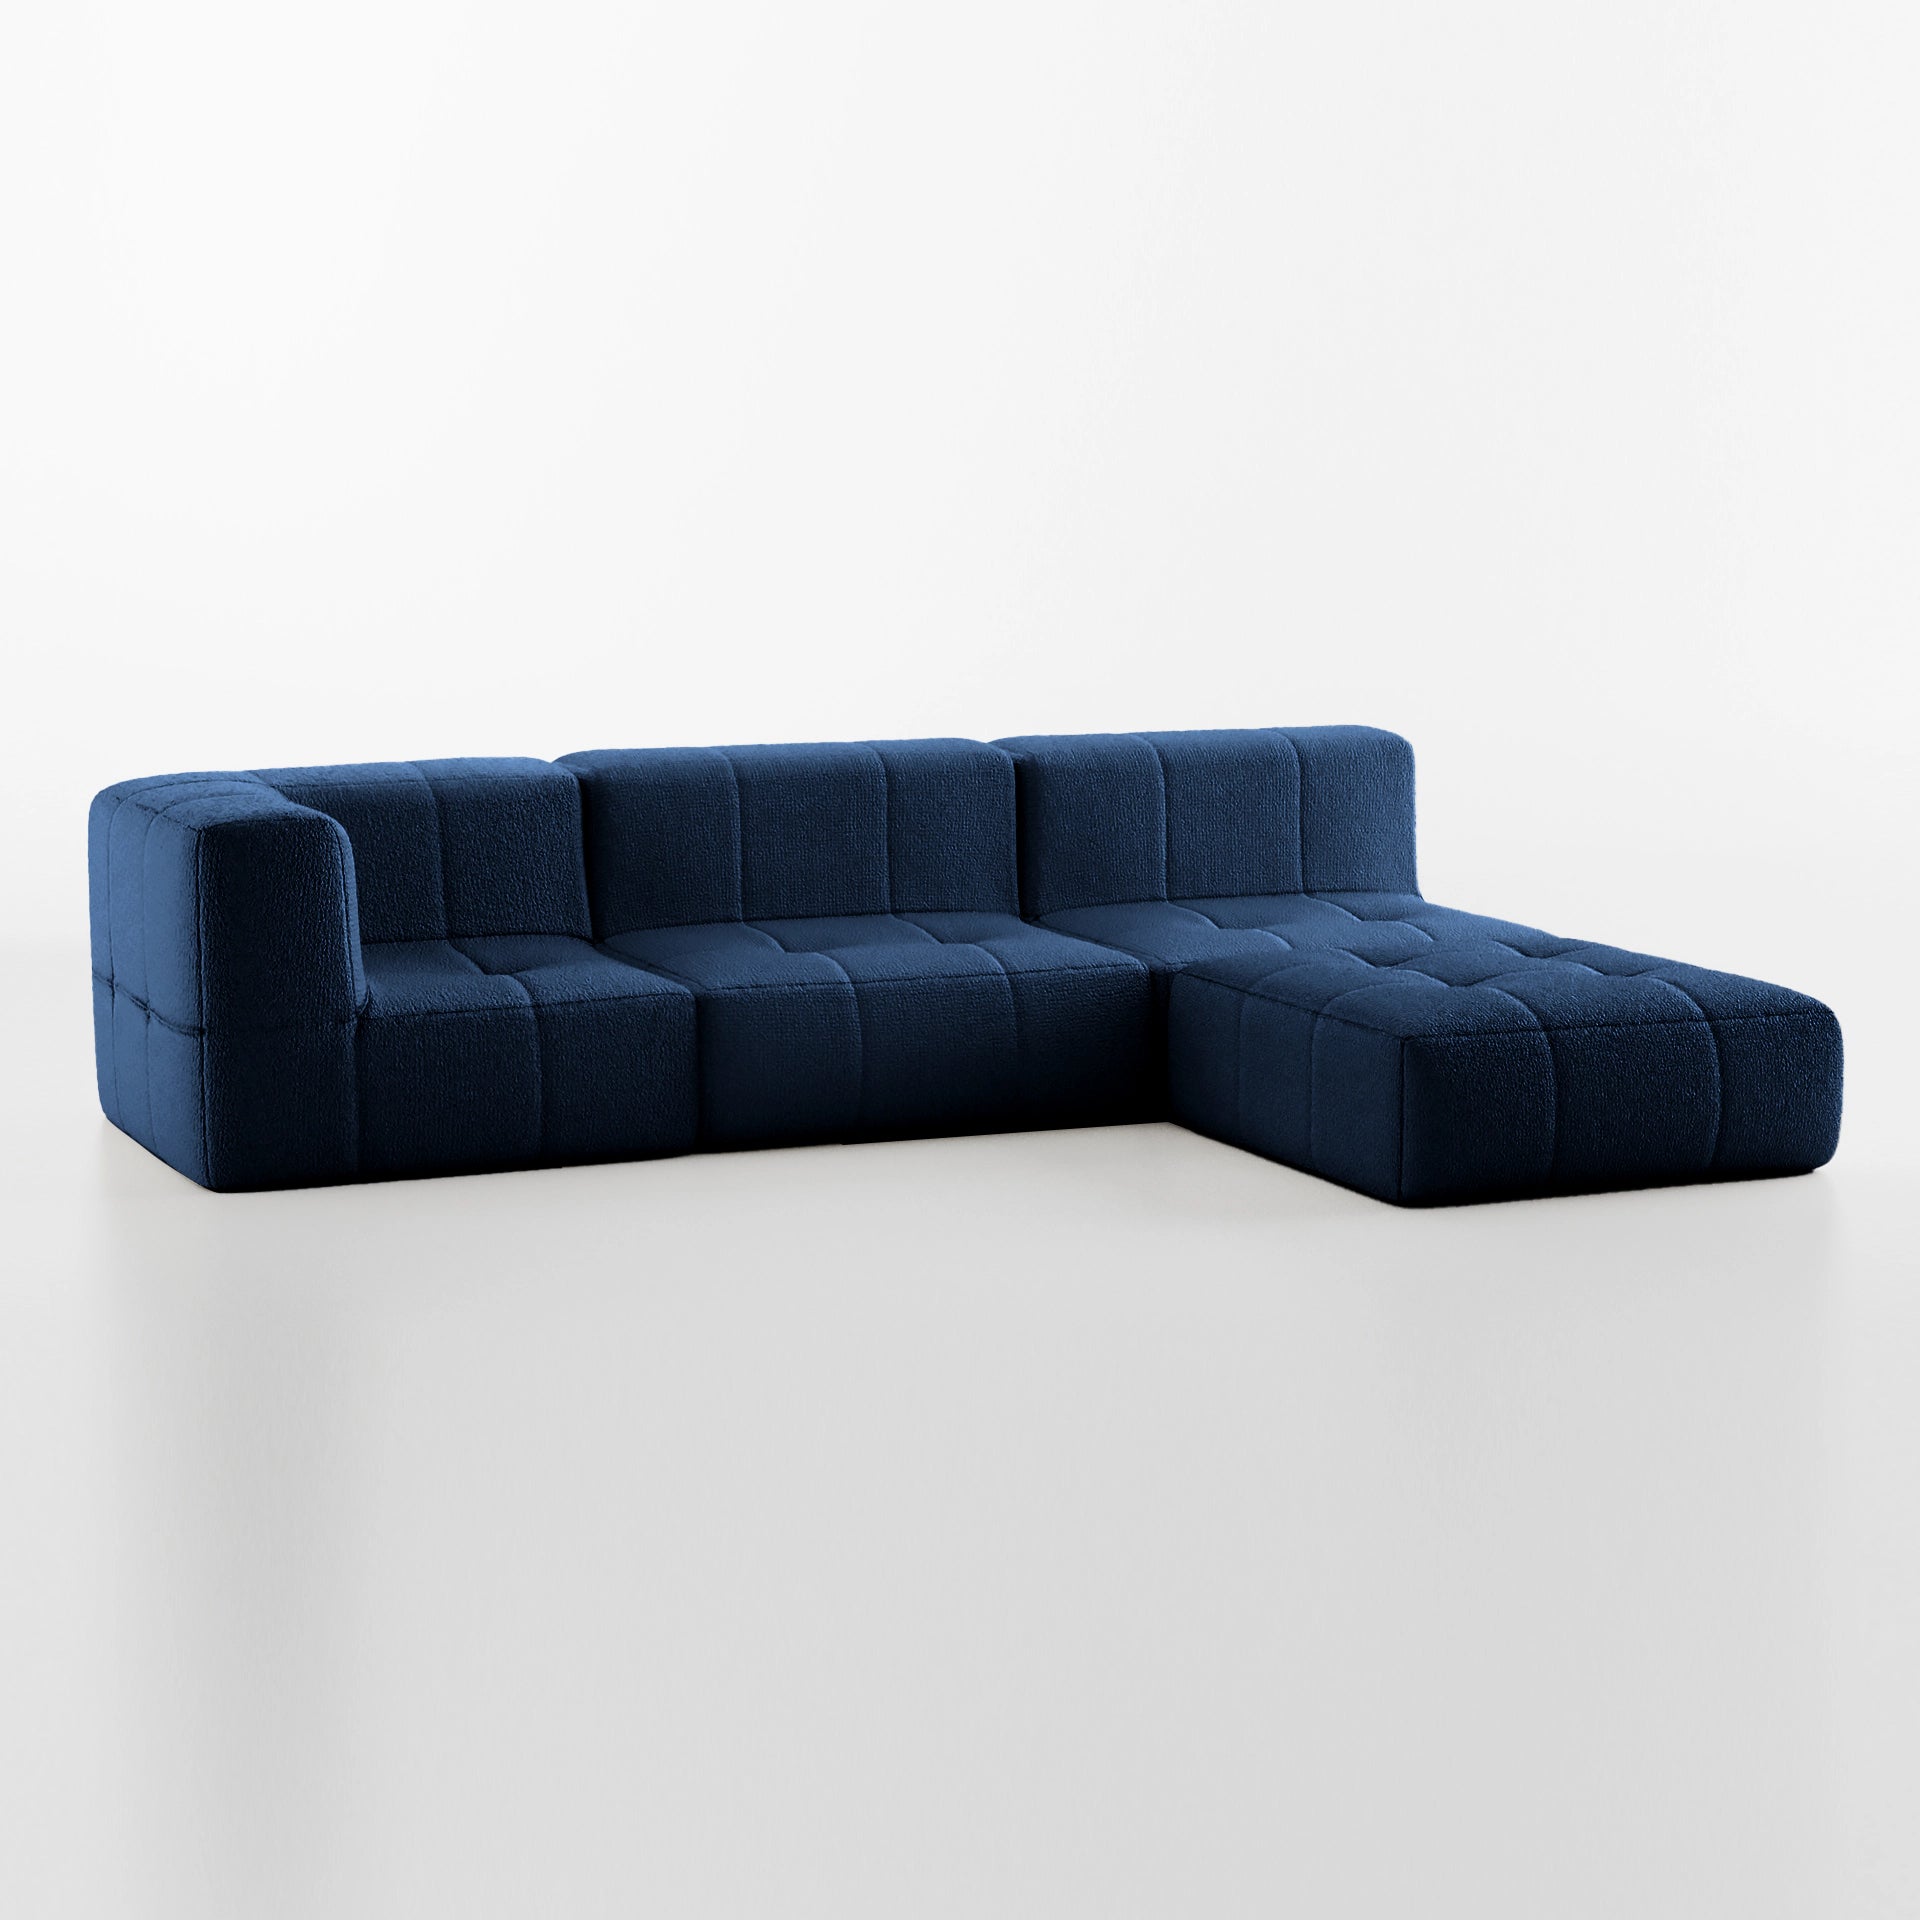 Sofá na Caixa modular 3 lugares em Boucle - 1 Braço com Chaise - Azul